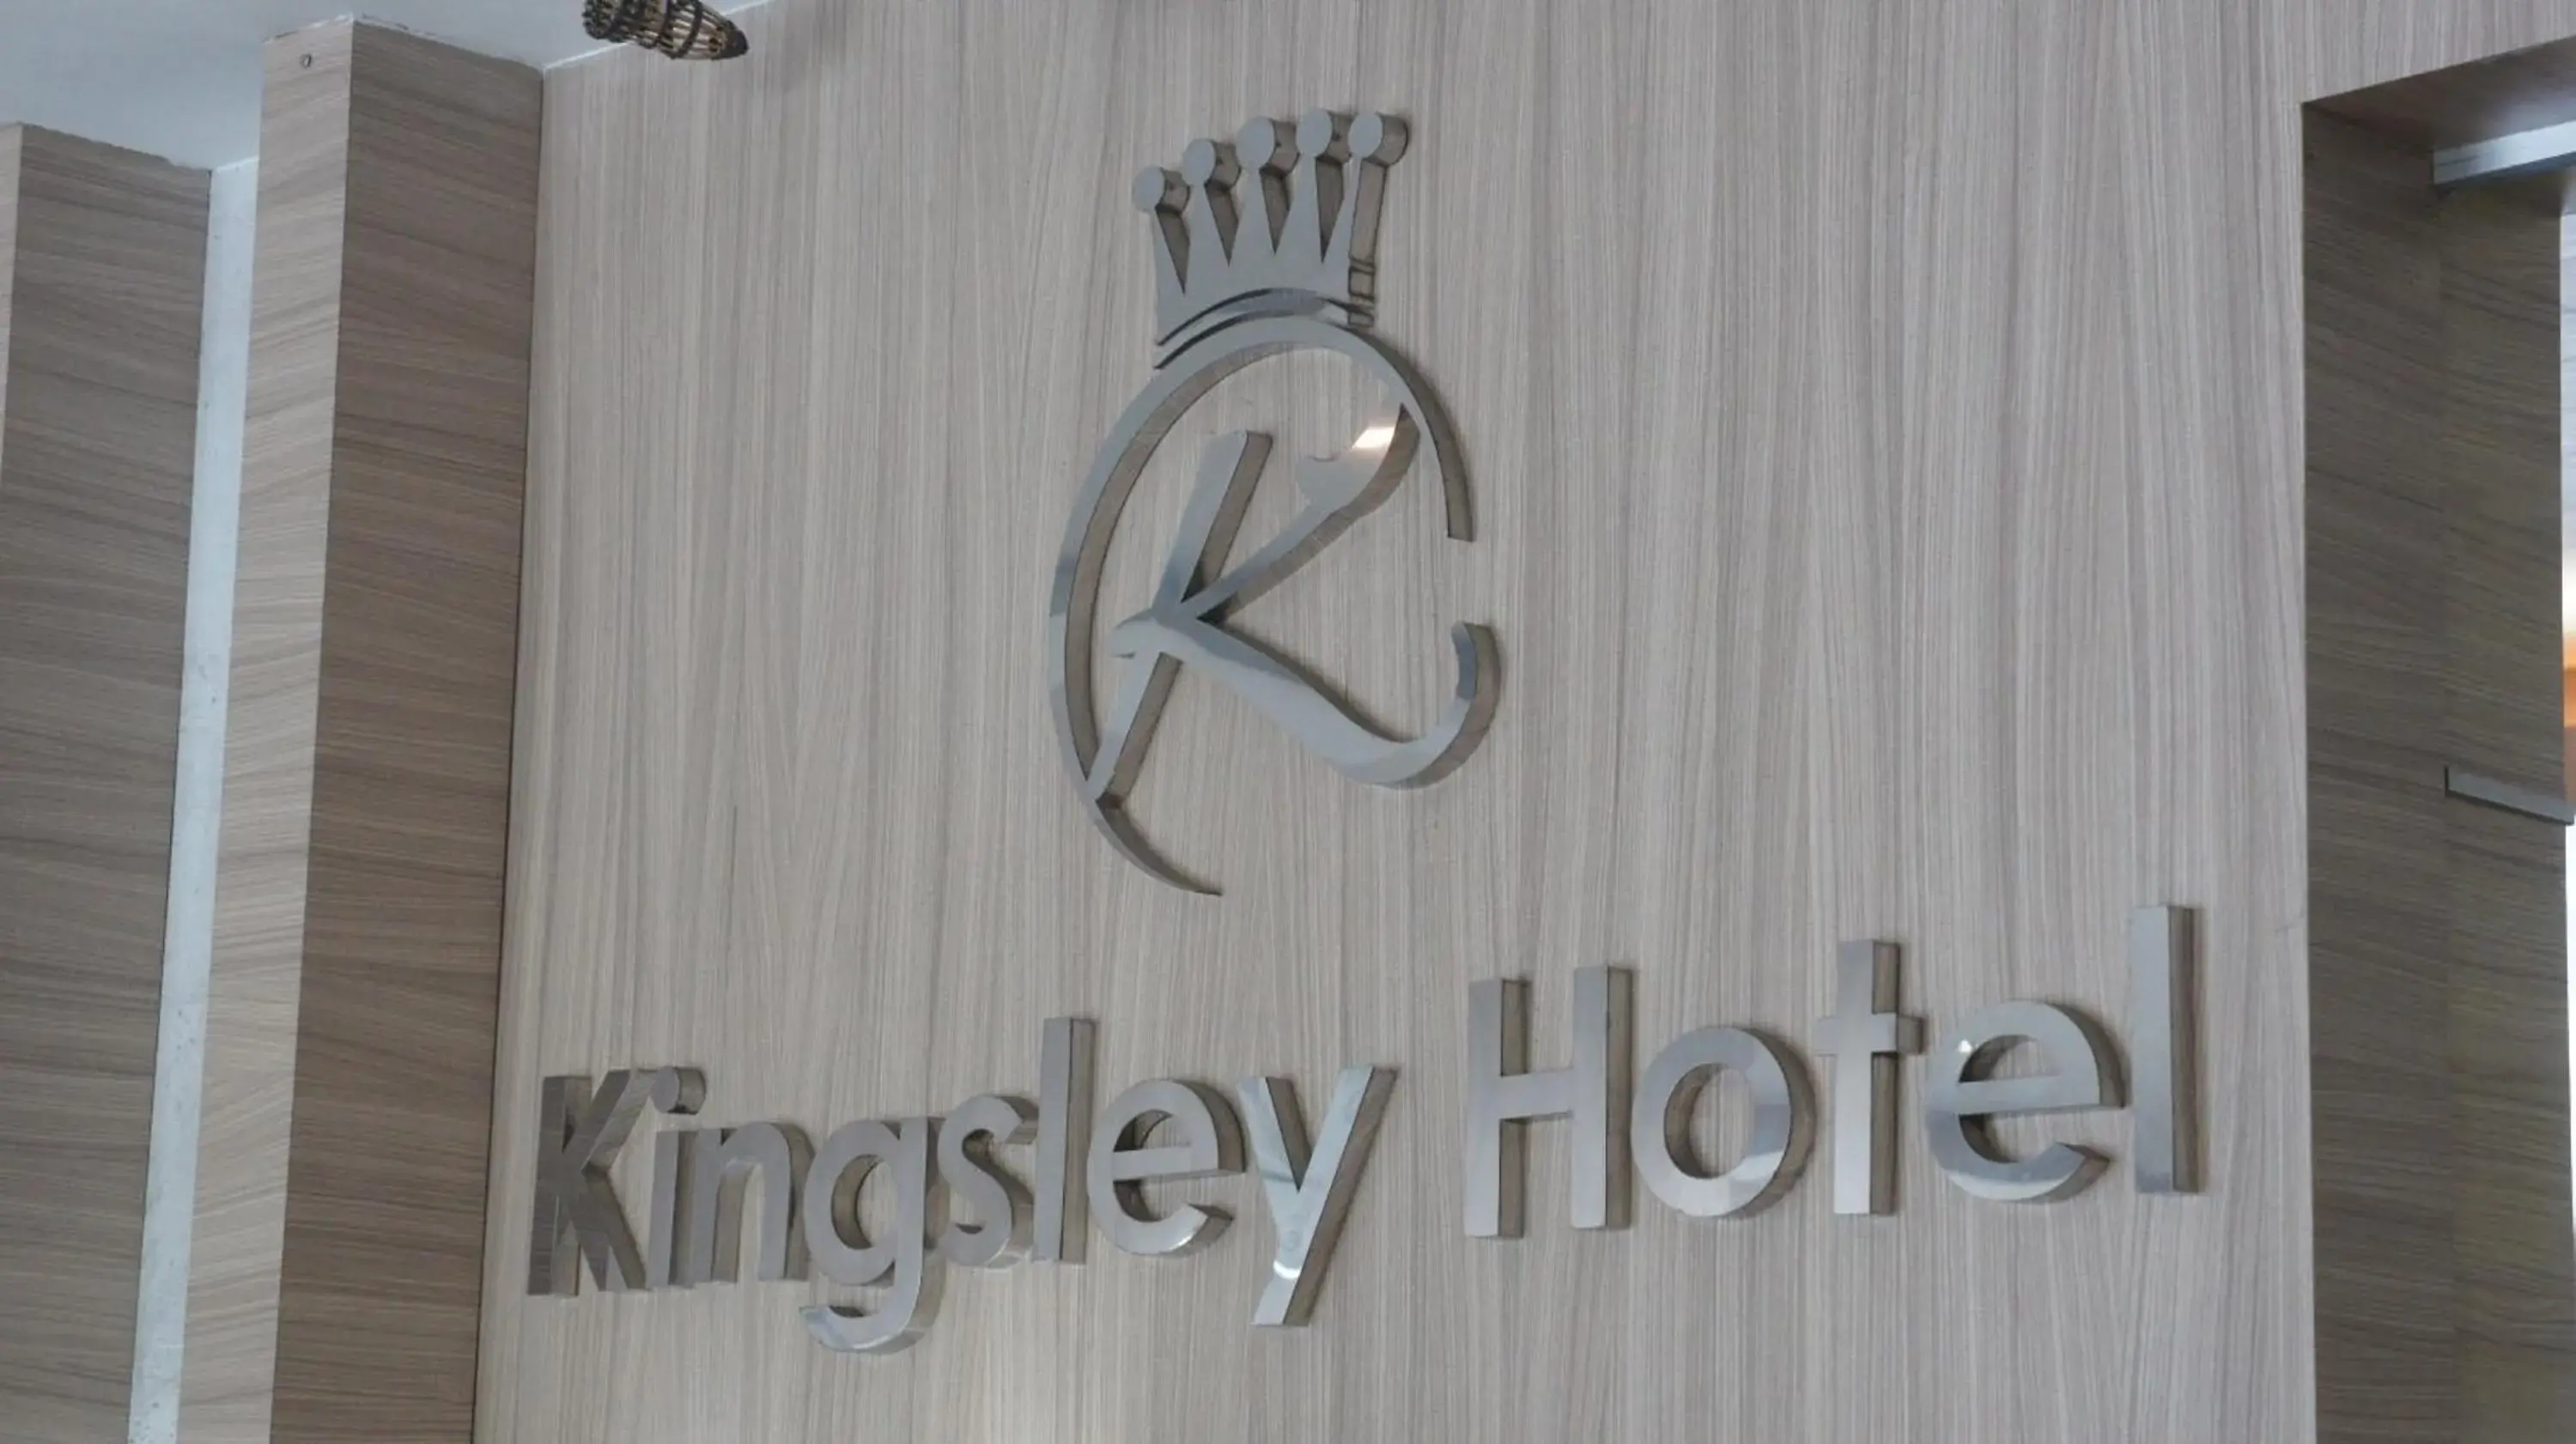 Property logo or sign, Property Logo/Sign in Kingsley Hotel